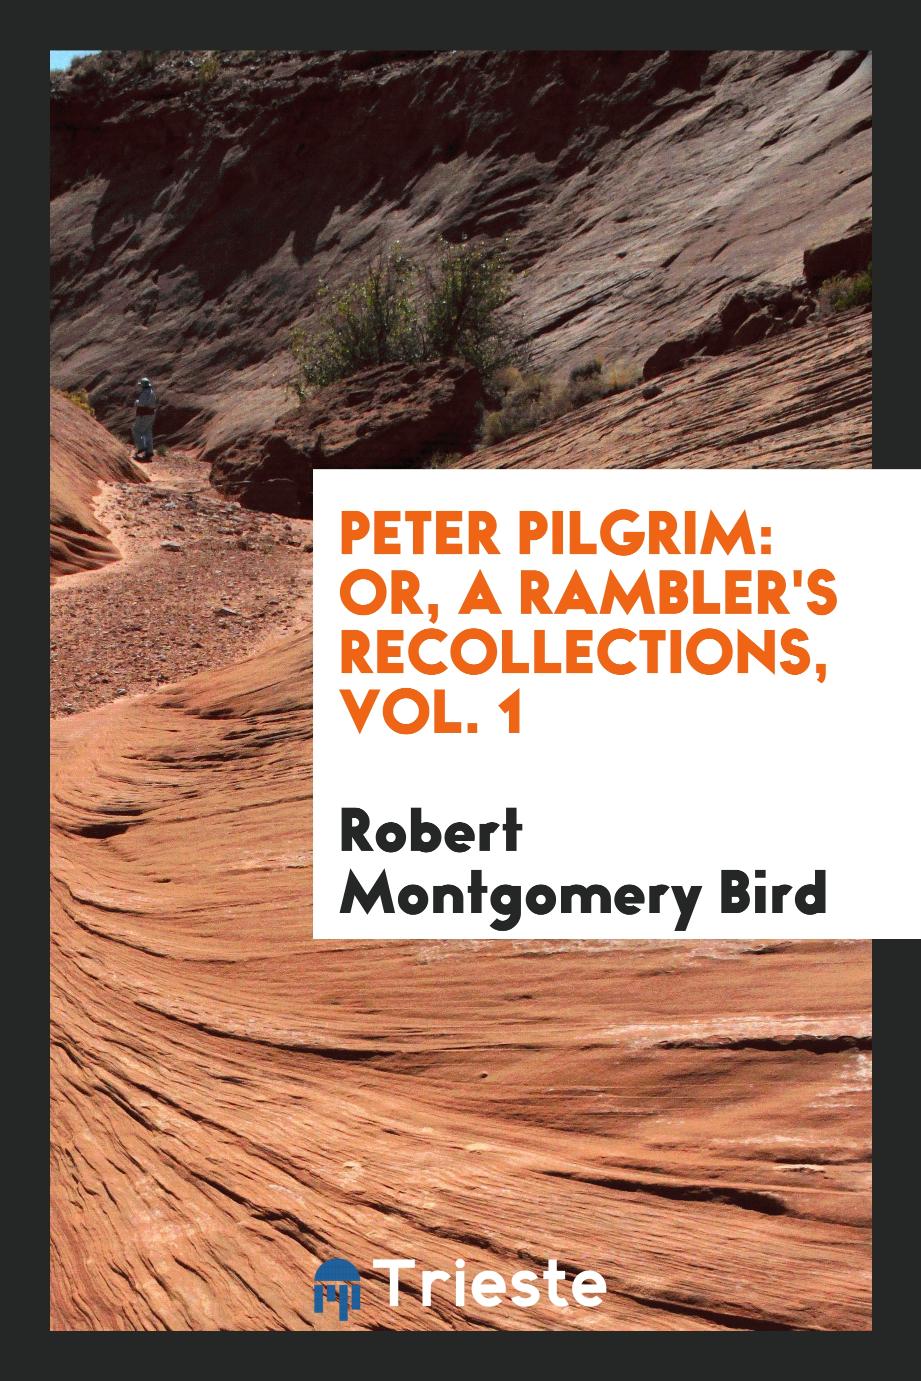 Peter Pilgrim: or, A rambler's recollections, Vol. 1